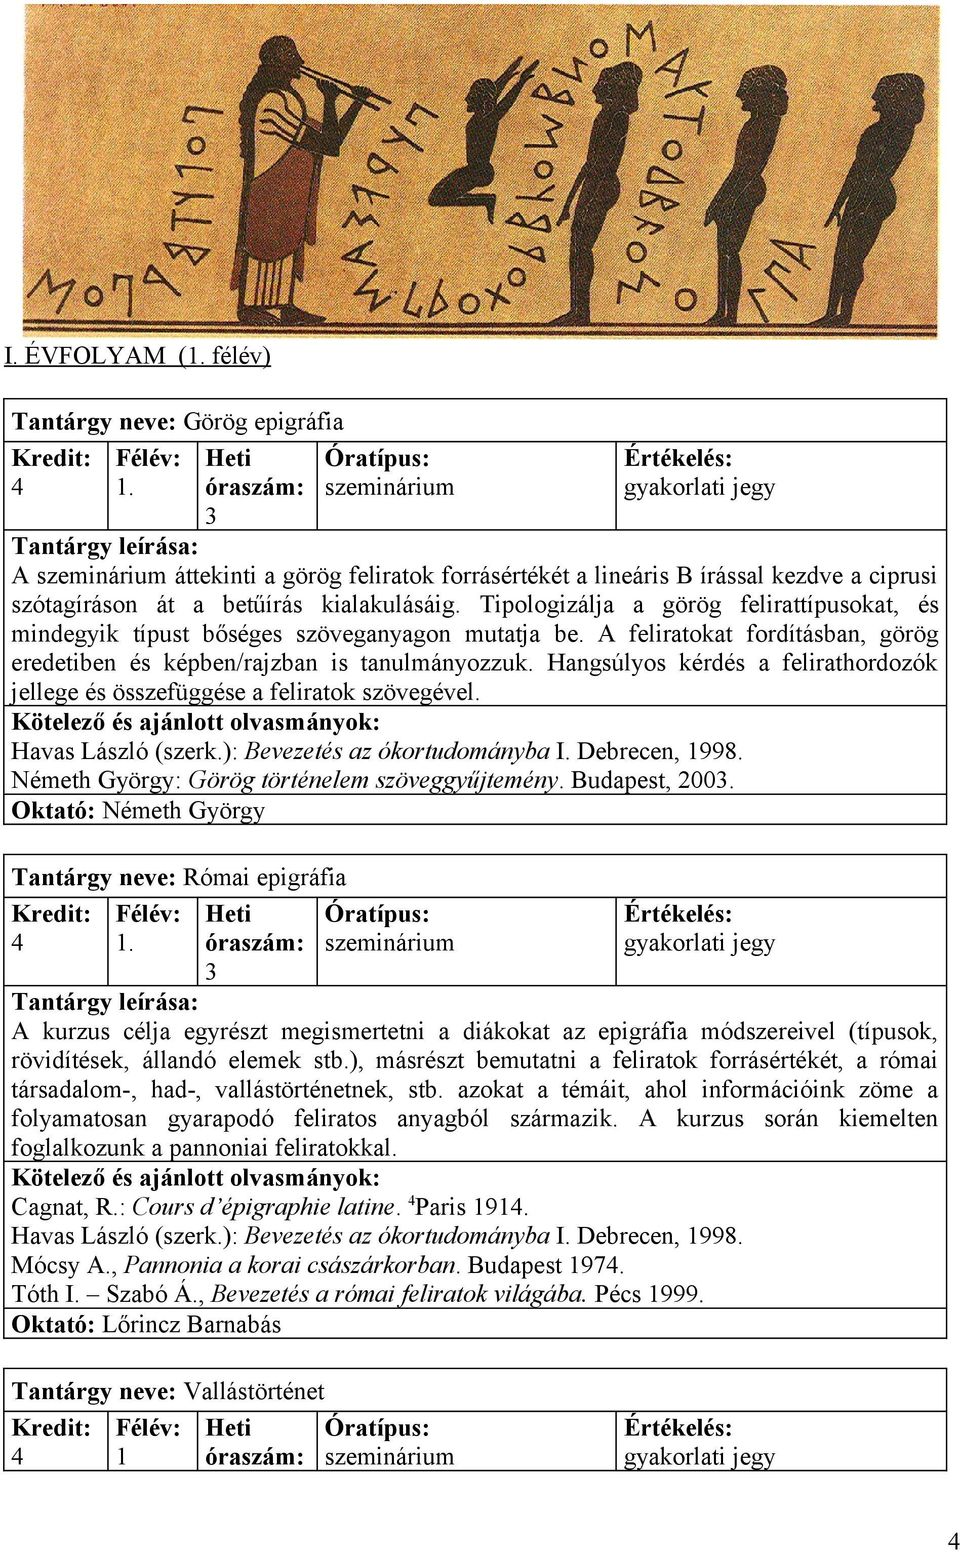 Hangsúlyos kérdés a felirathordozók jellege és összefüggése a feliratok szövegével. Havas László (szerk.): Bevezetés az ókortudományba I. Debrecen, 1998.